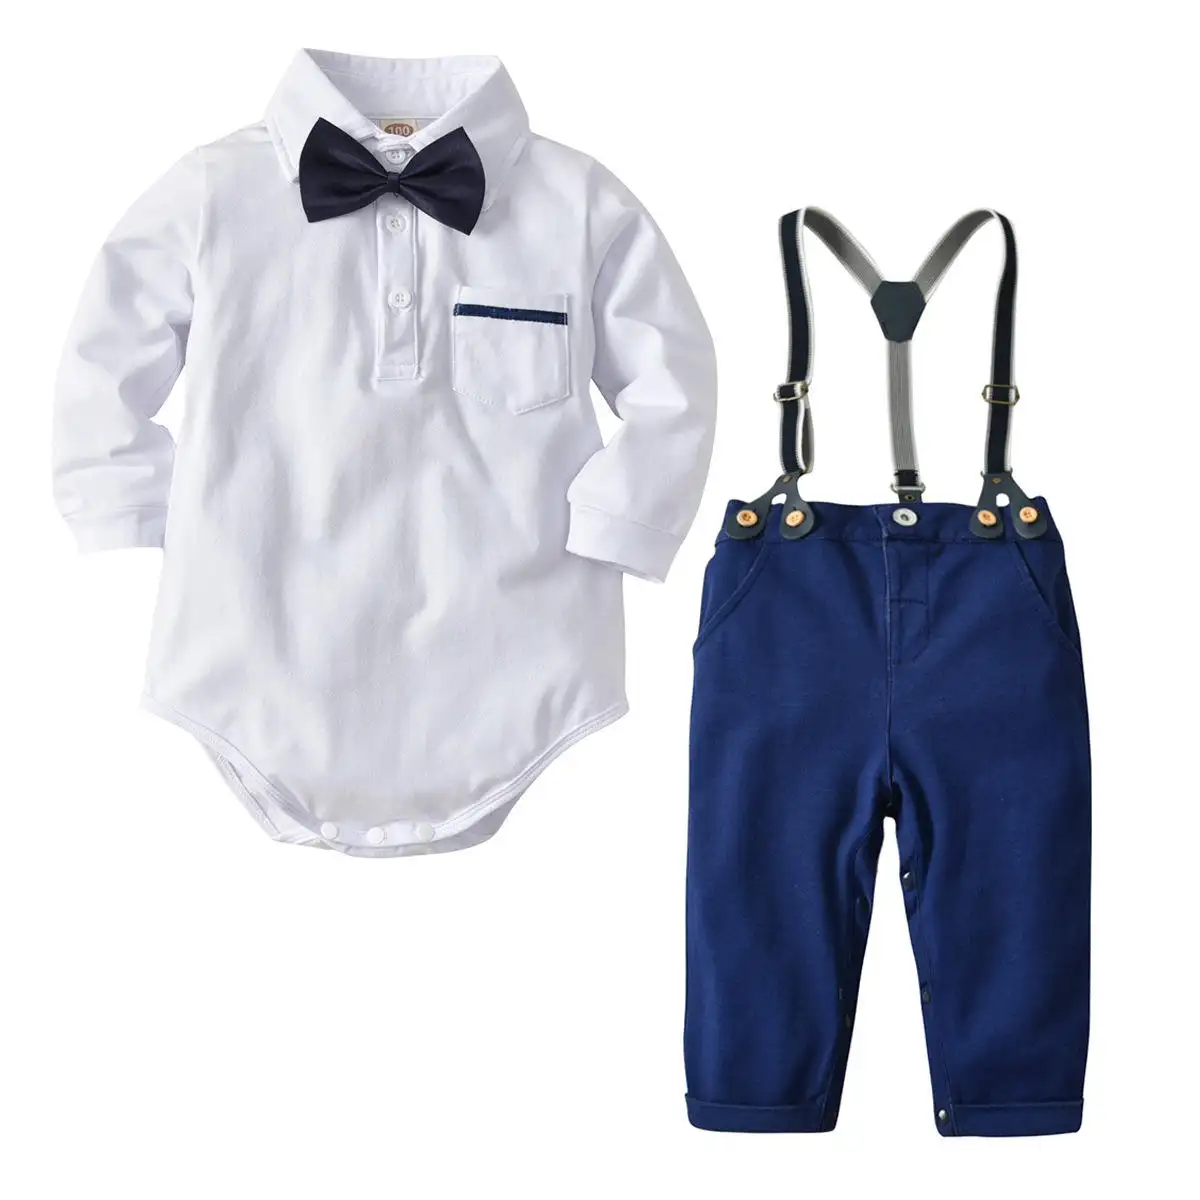 ที่กําหนดเองเด็กทารกฤดูใบไม้ร่วงหลวมกางเกงสูทสุภาพบุรุษ Bow Tie ผ้าฝ้ายทารก Romper ชุดทารกเกิดใหม่ผลิตภัณฑ์เด็กบริการ Oem